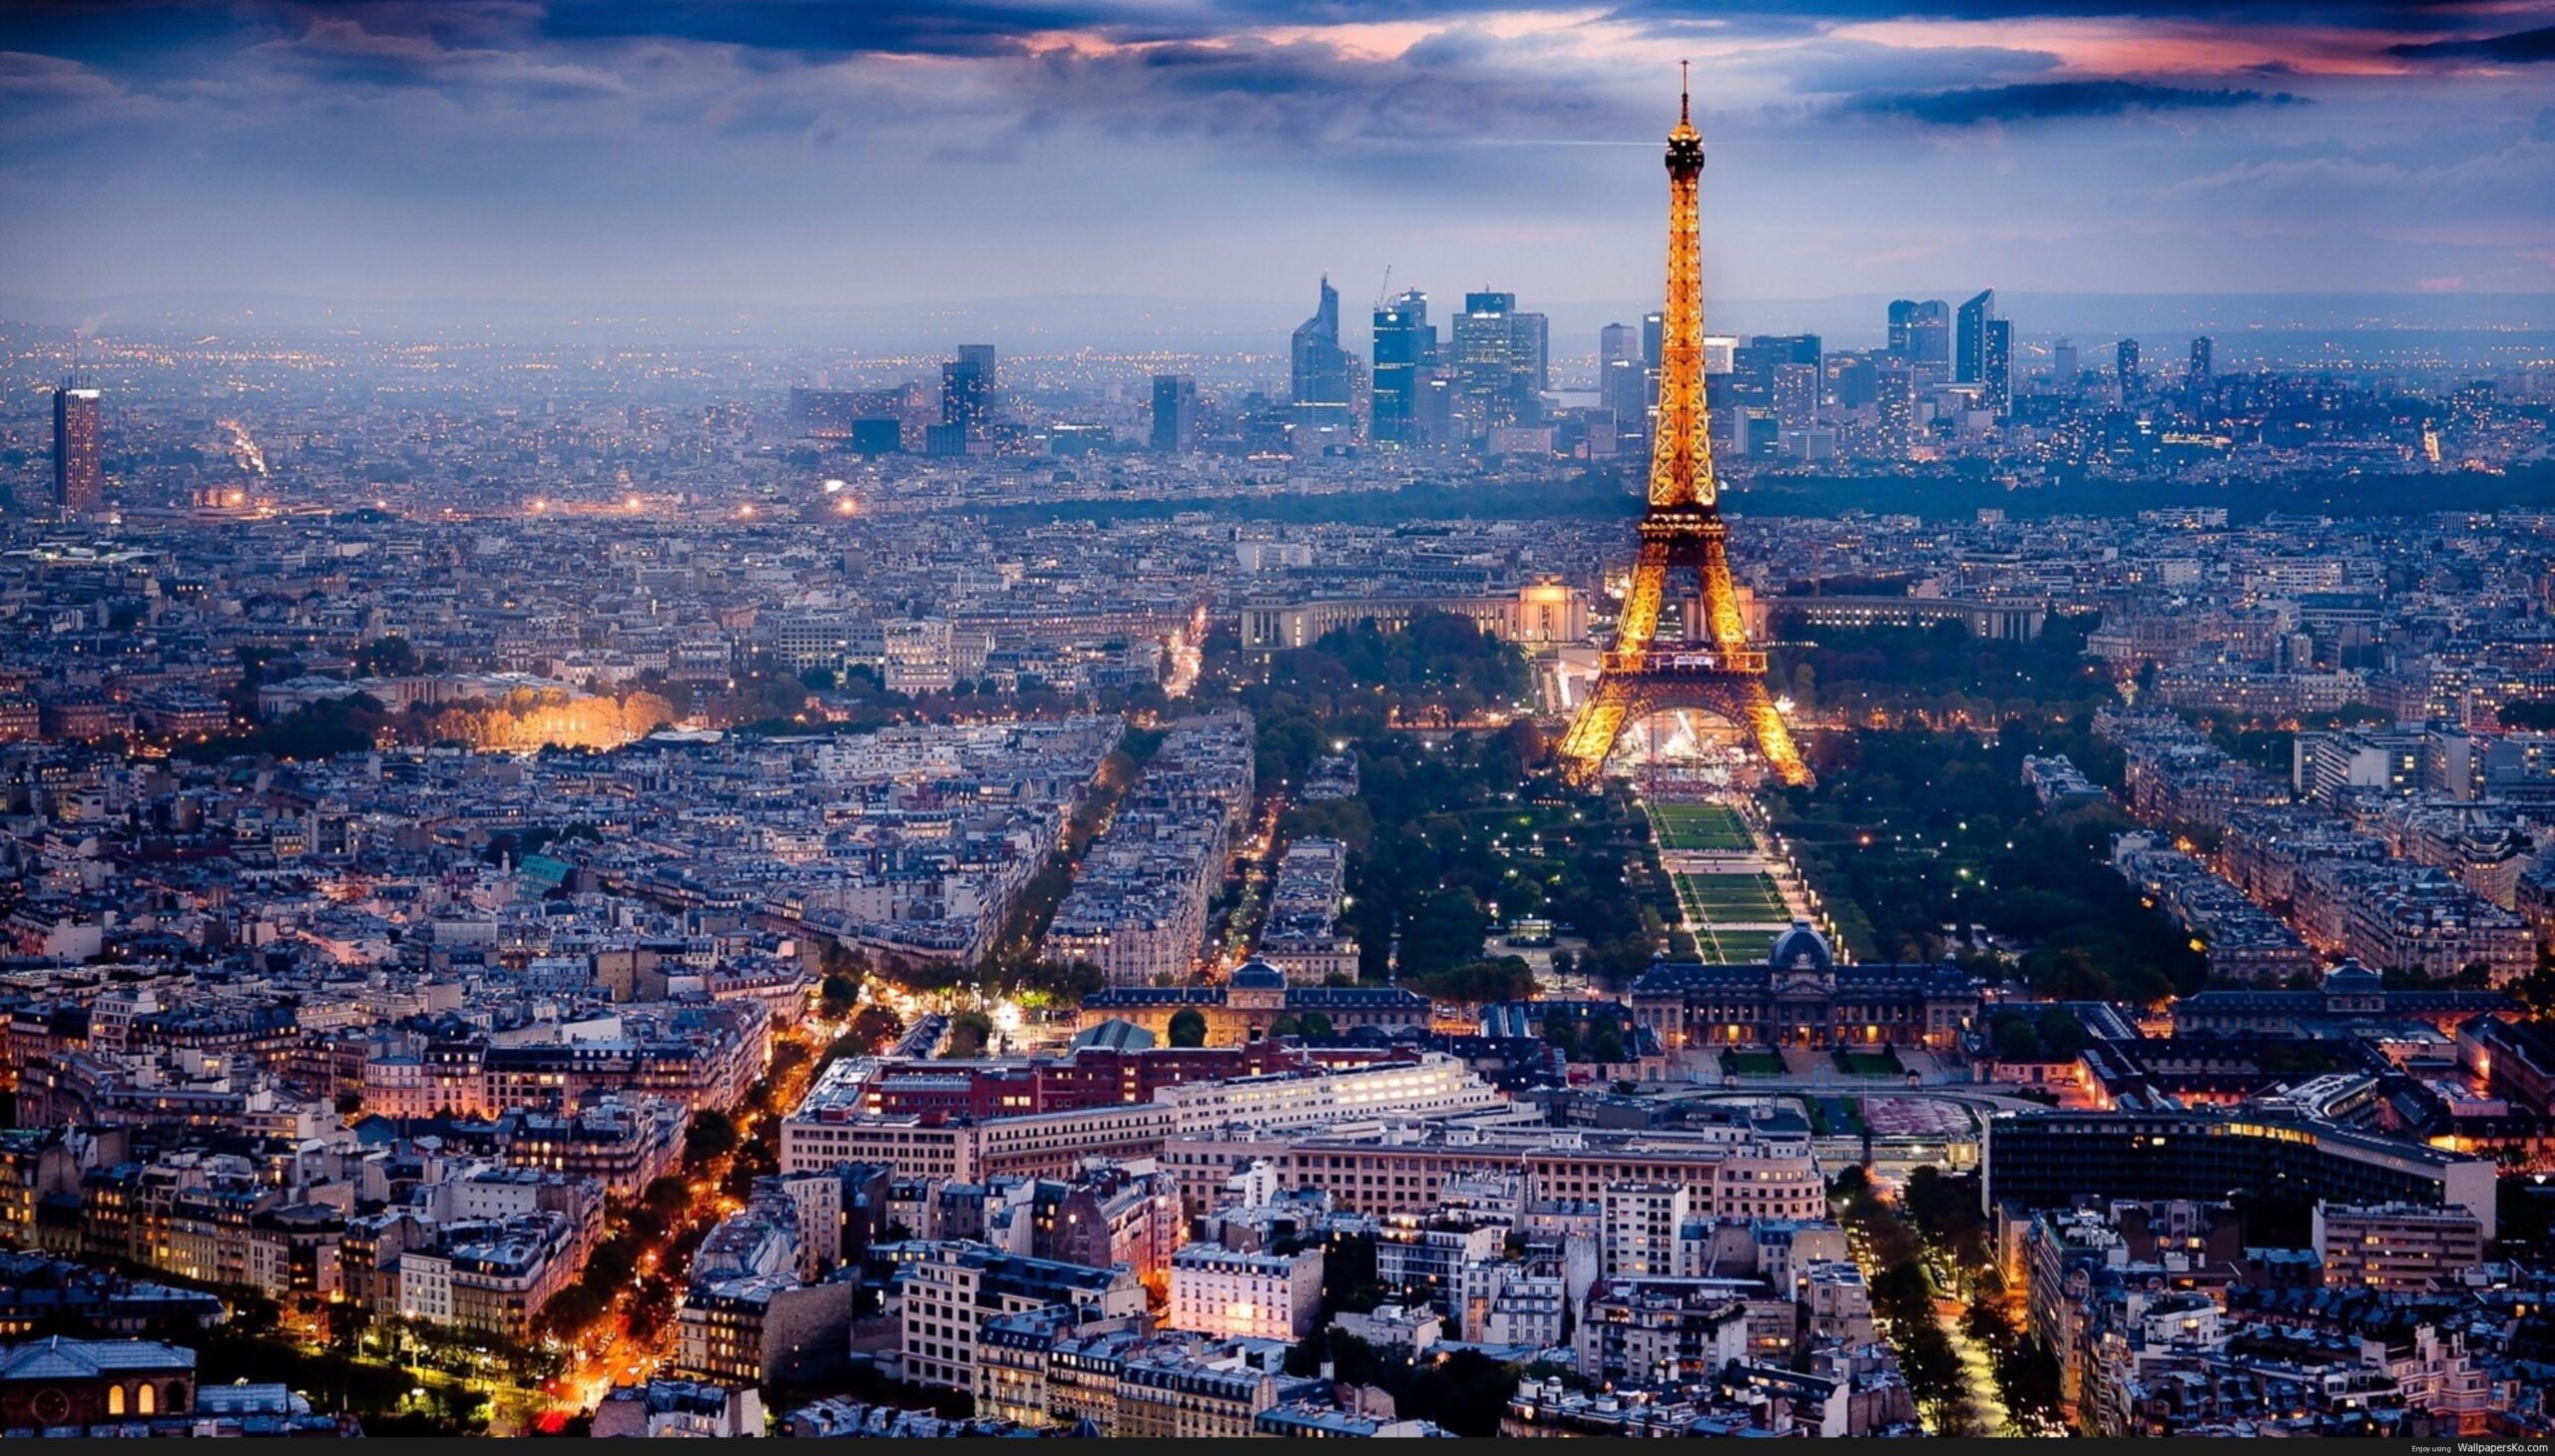 يُعتبر الاستثمار العقاري في فرنسا واحدًا من أفضل و أبرز المجالات التي يلجأ إليها المستثمرون الوطنيون والدوليون على حدٍ سواء لـ الاستثمار